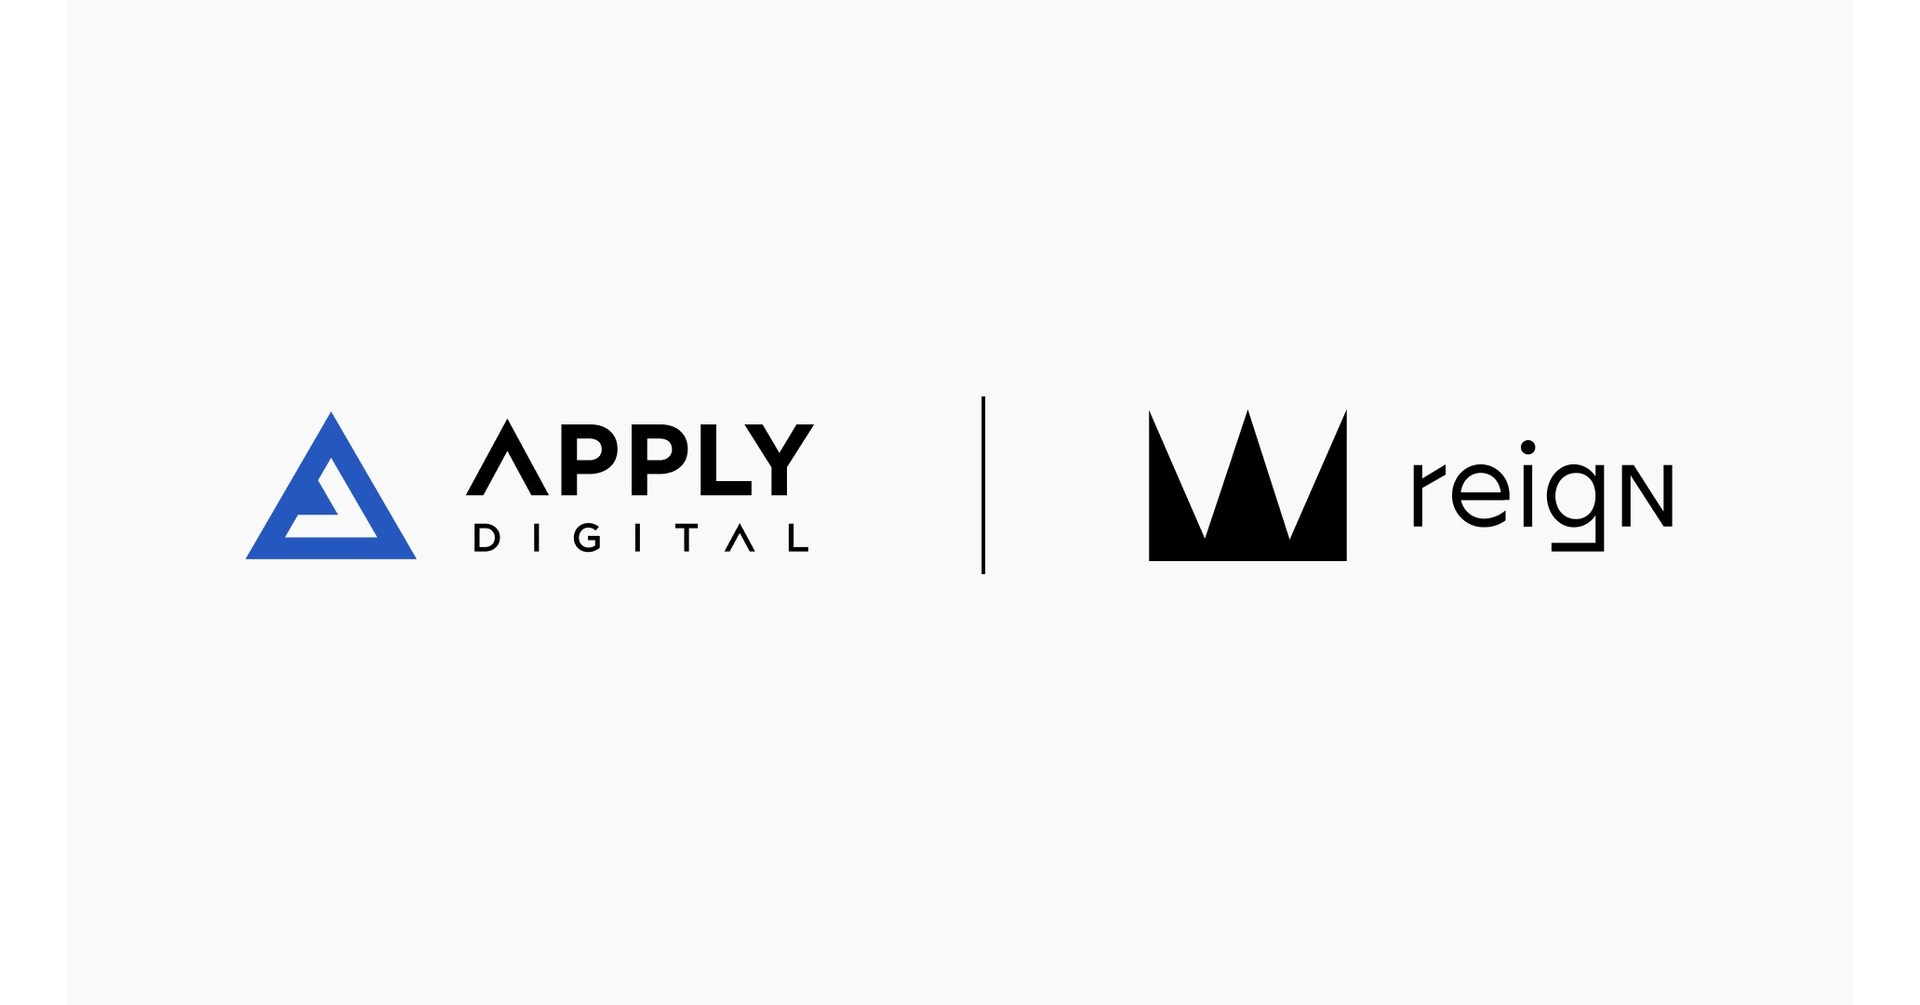 Apply Digital adquiere Reign para mejorar aún más las capacidades para servir a las marcas globales